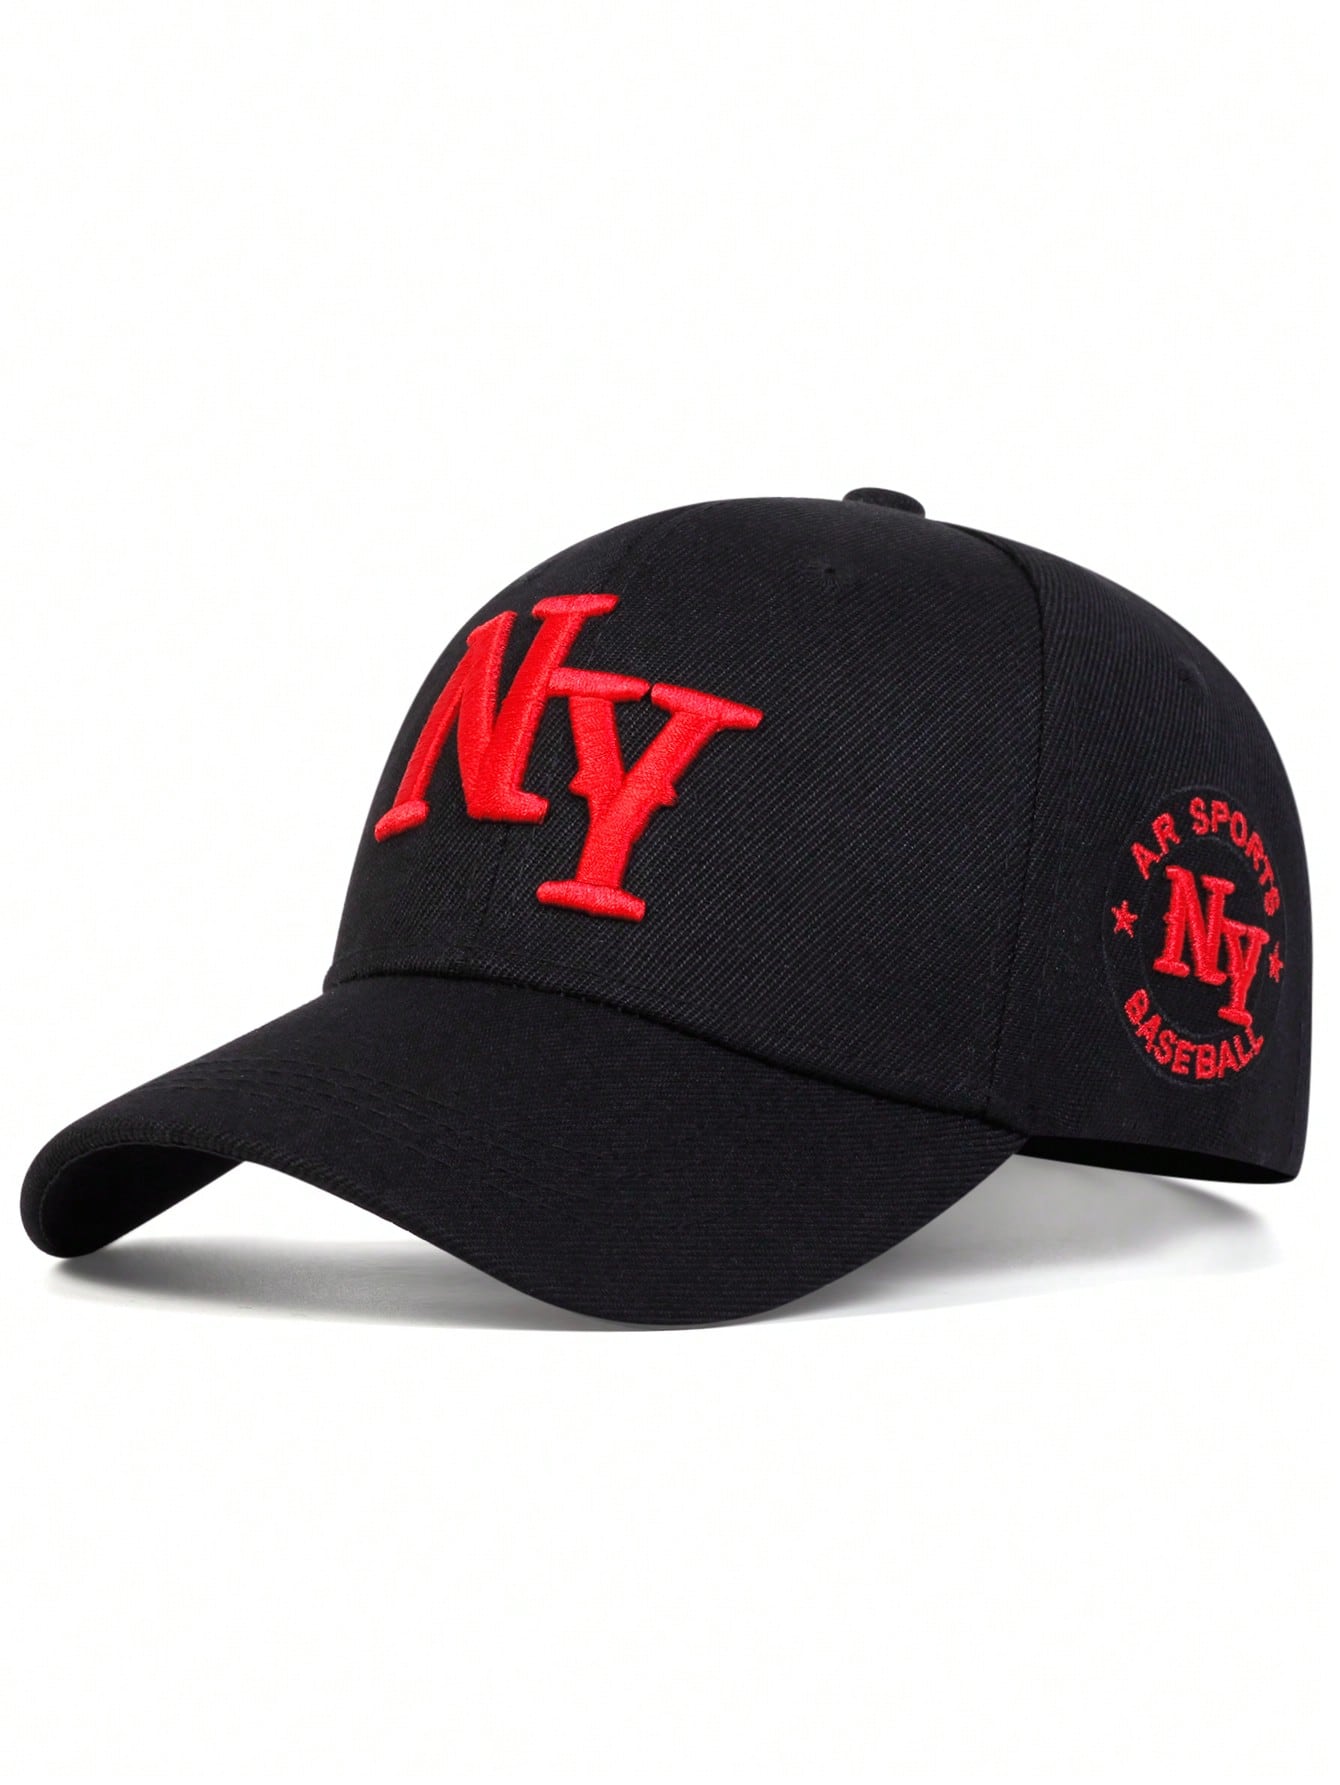 1 шт. мужская бейсболка с вышивкой букв «Нью-Йорк», черный бейсболка с вышивкой букв женская летняя бейсболка уличная корейская ретро мягкая кепка